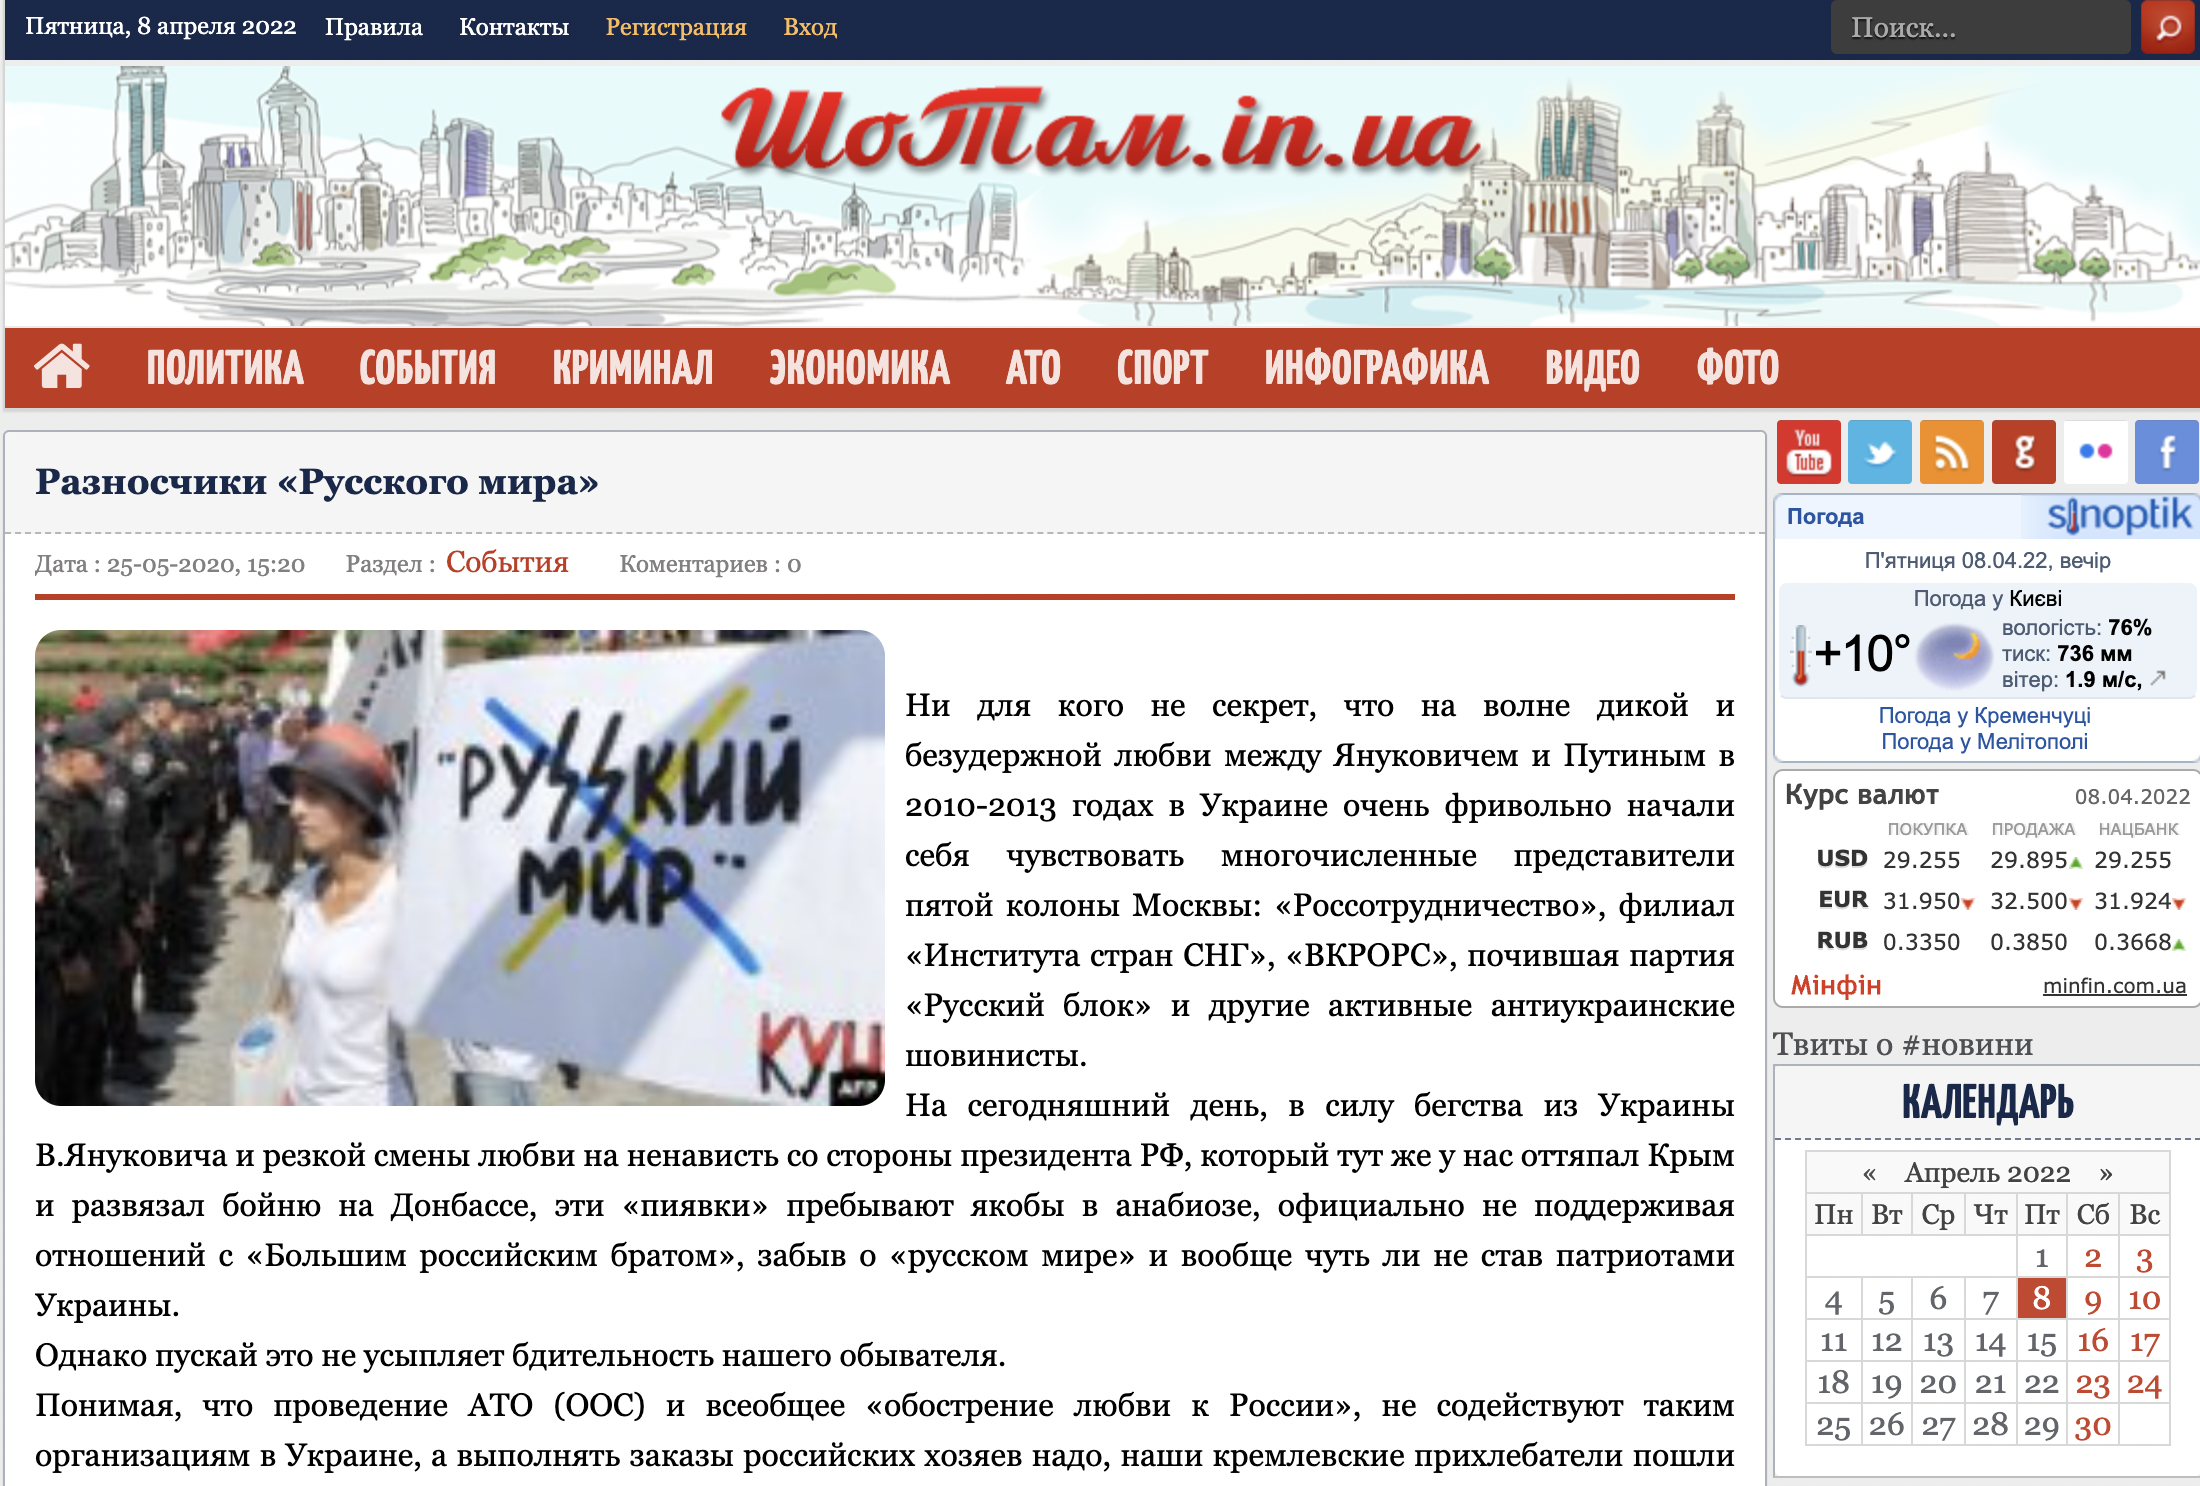 Скриншот публикации, направленной против пророссийских граждан в Херсоне. Скриншот © LIFE / шотам.in.ua